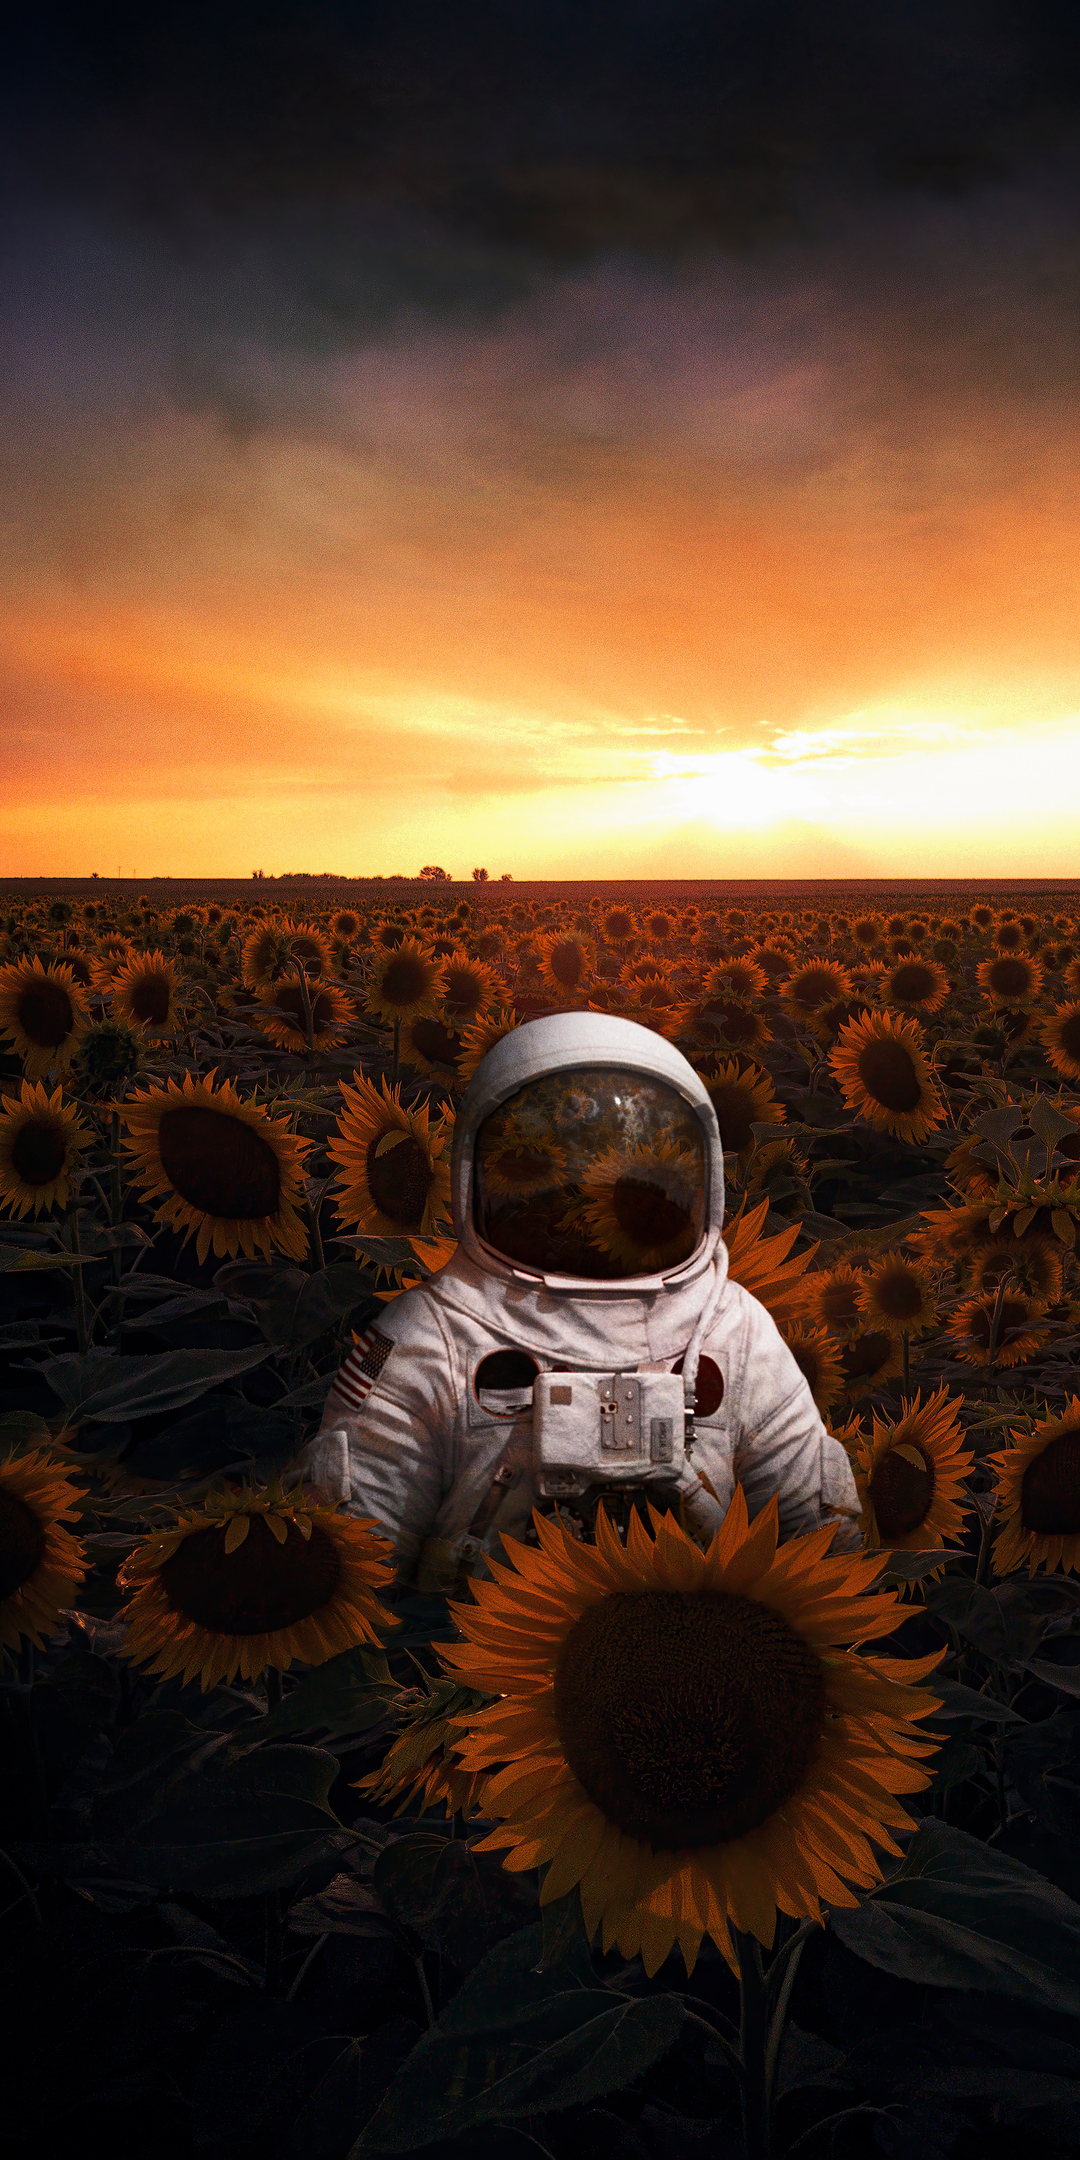 astronaut-in-sunflowers-field-4k-45.jpg